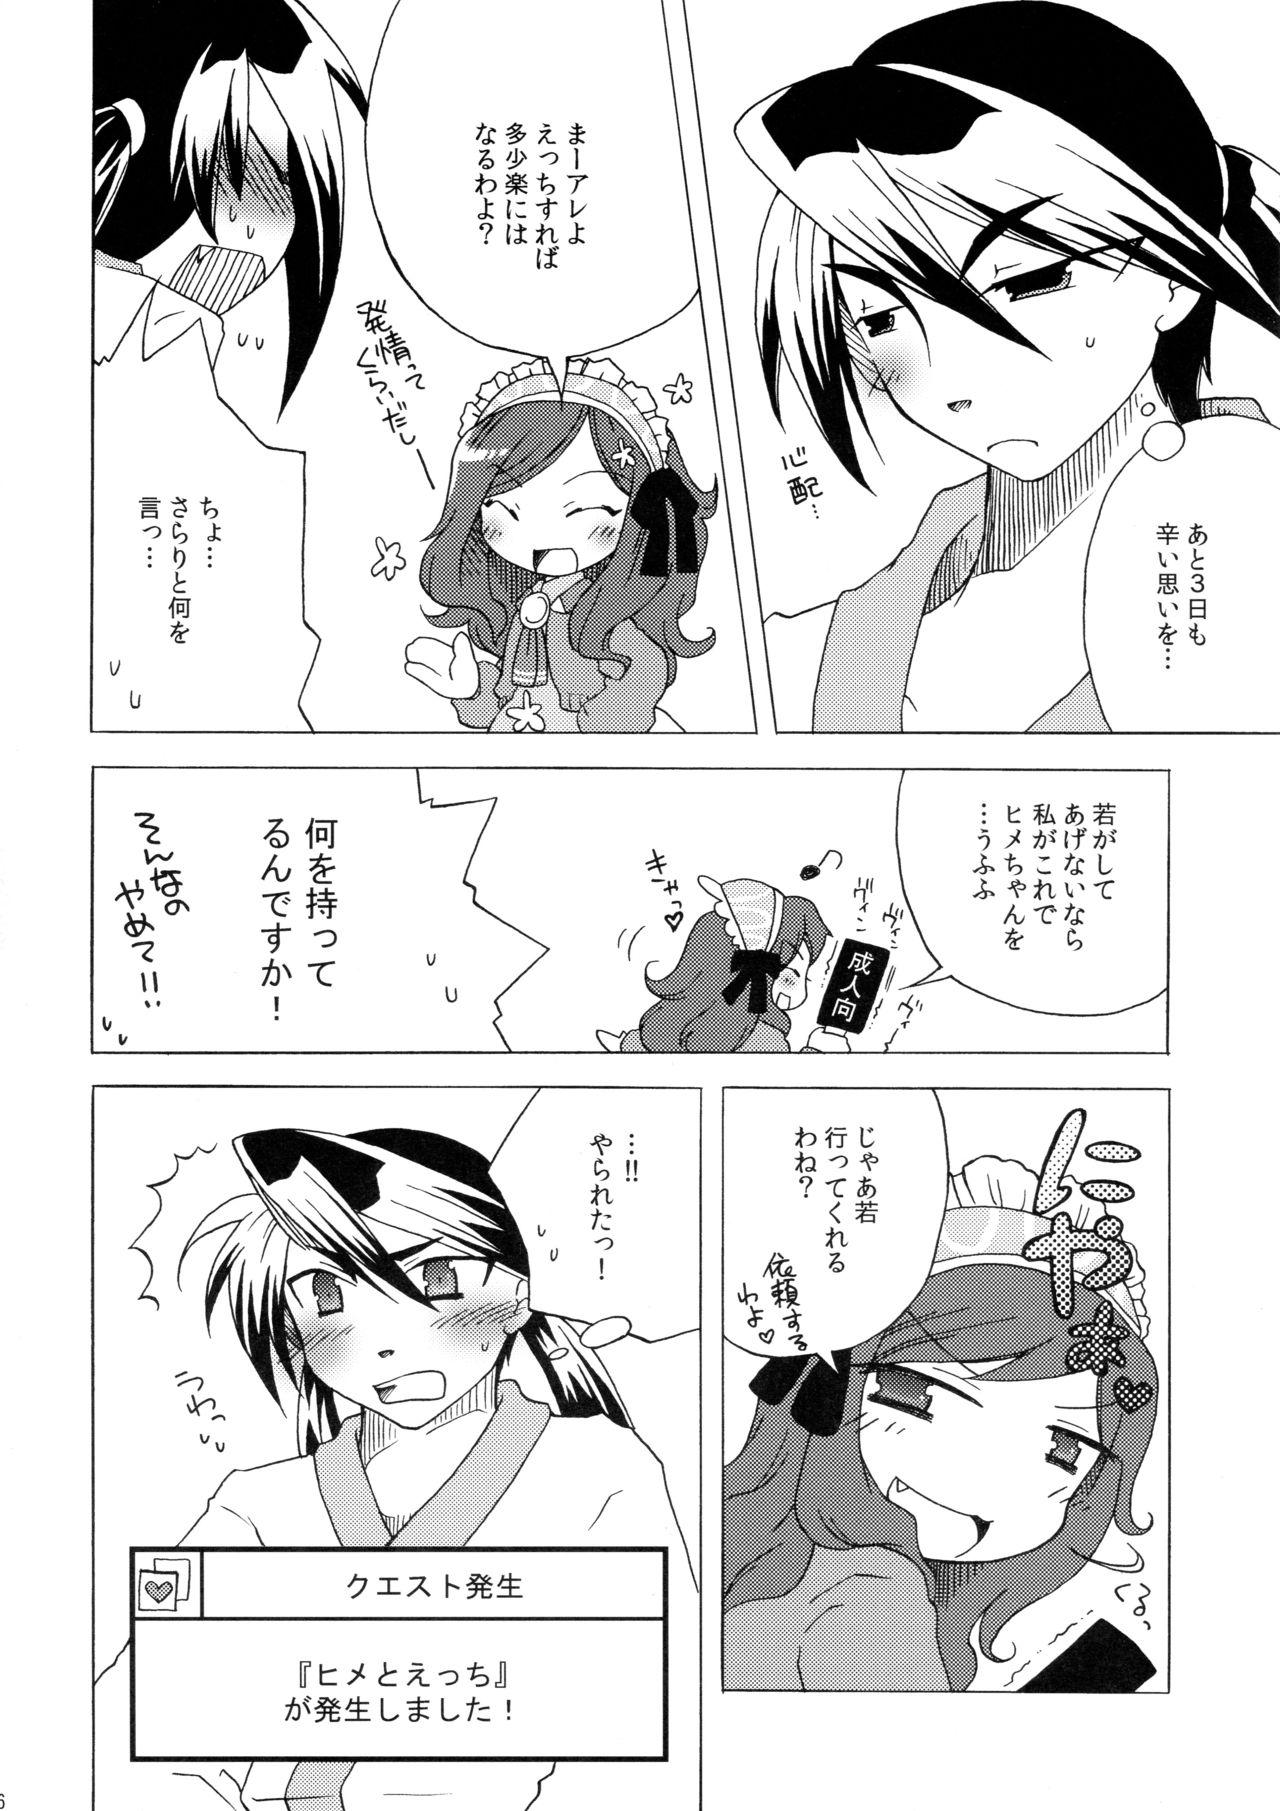 Bald Pussy Waka Utsu no Hajimete. - 7th dragon 3some - Page 6